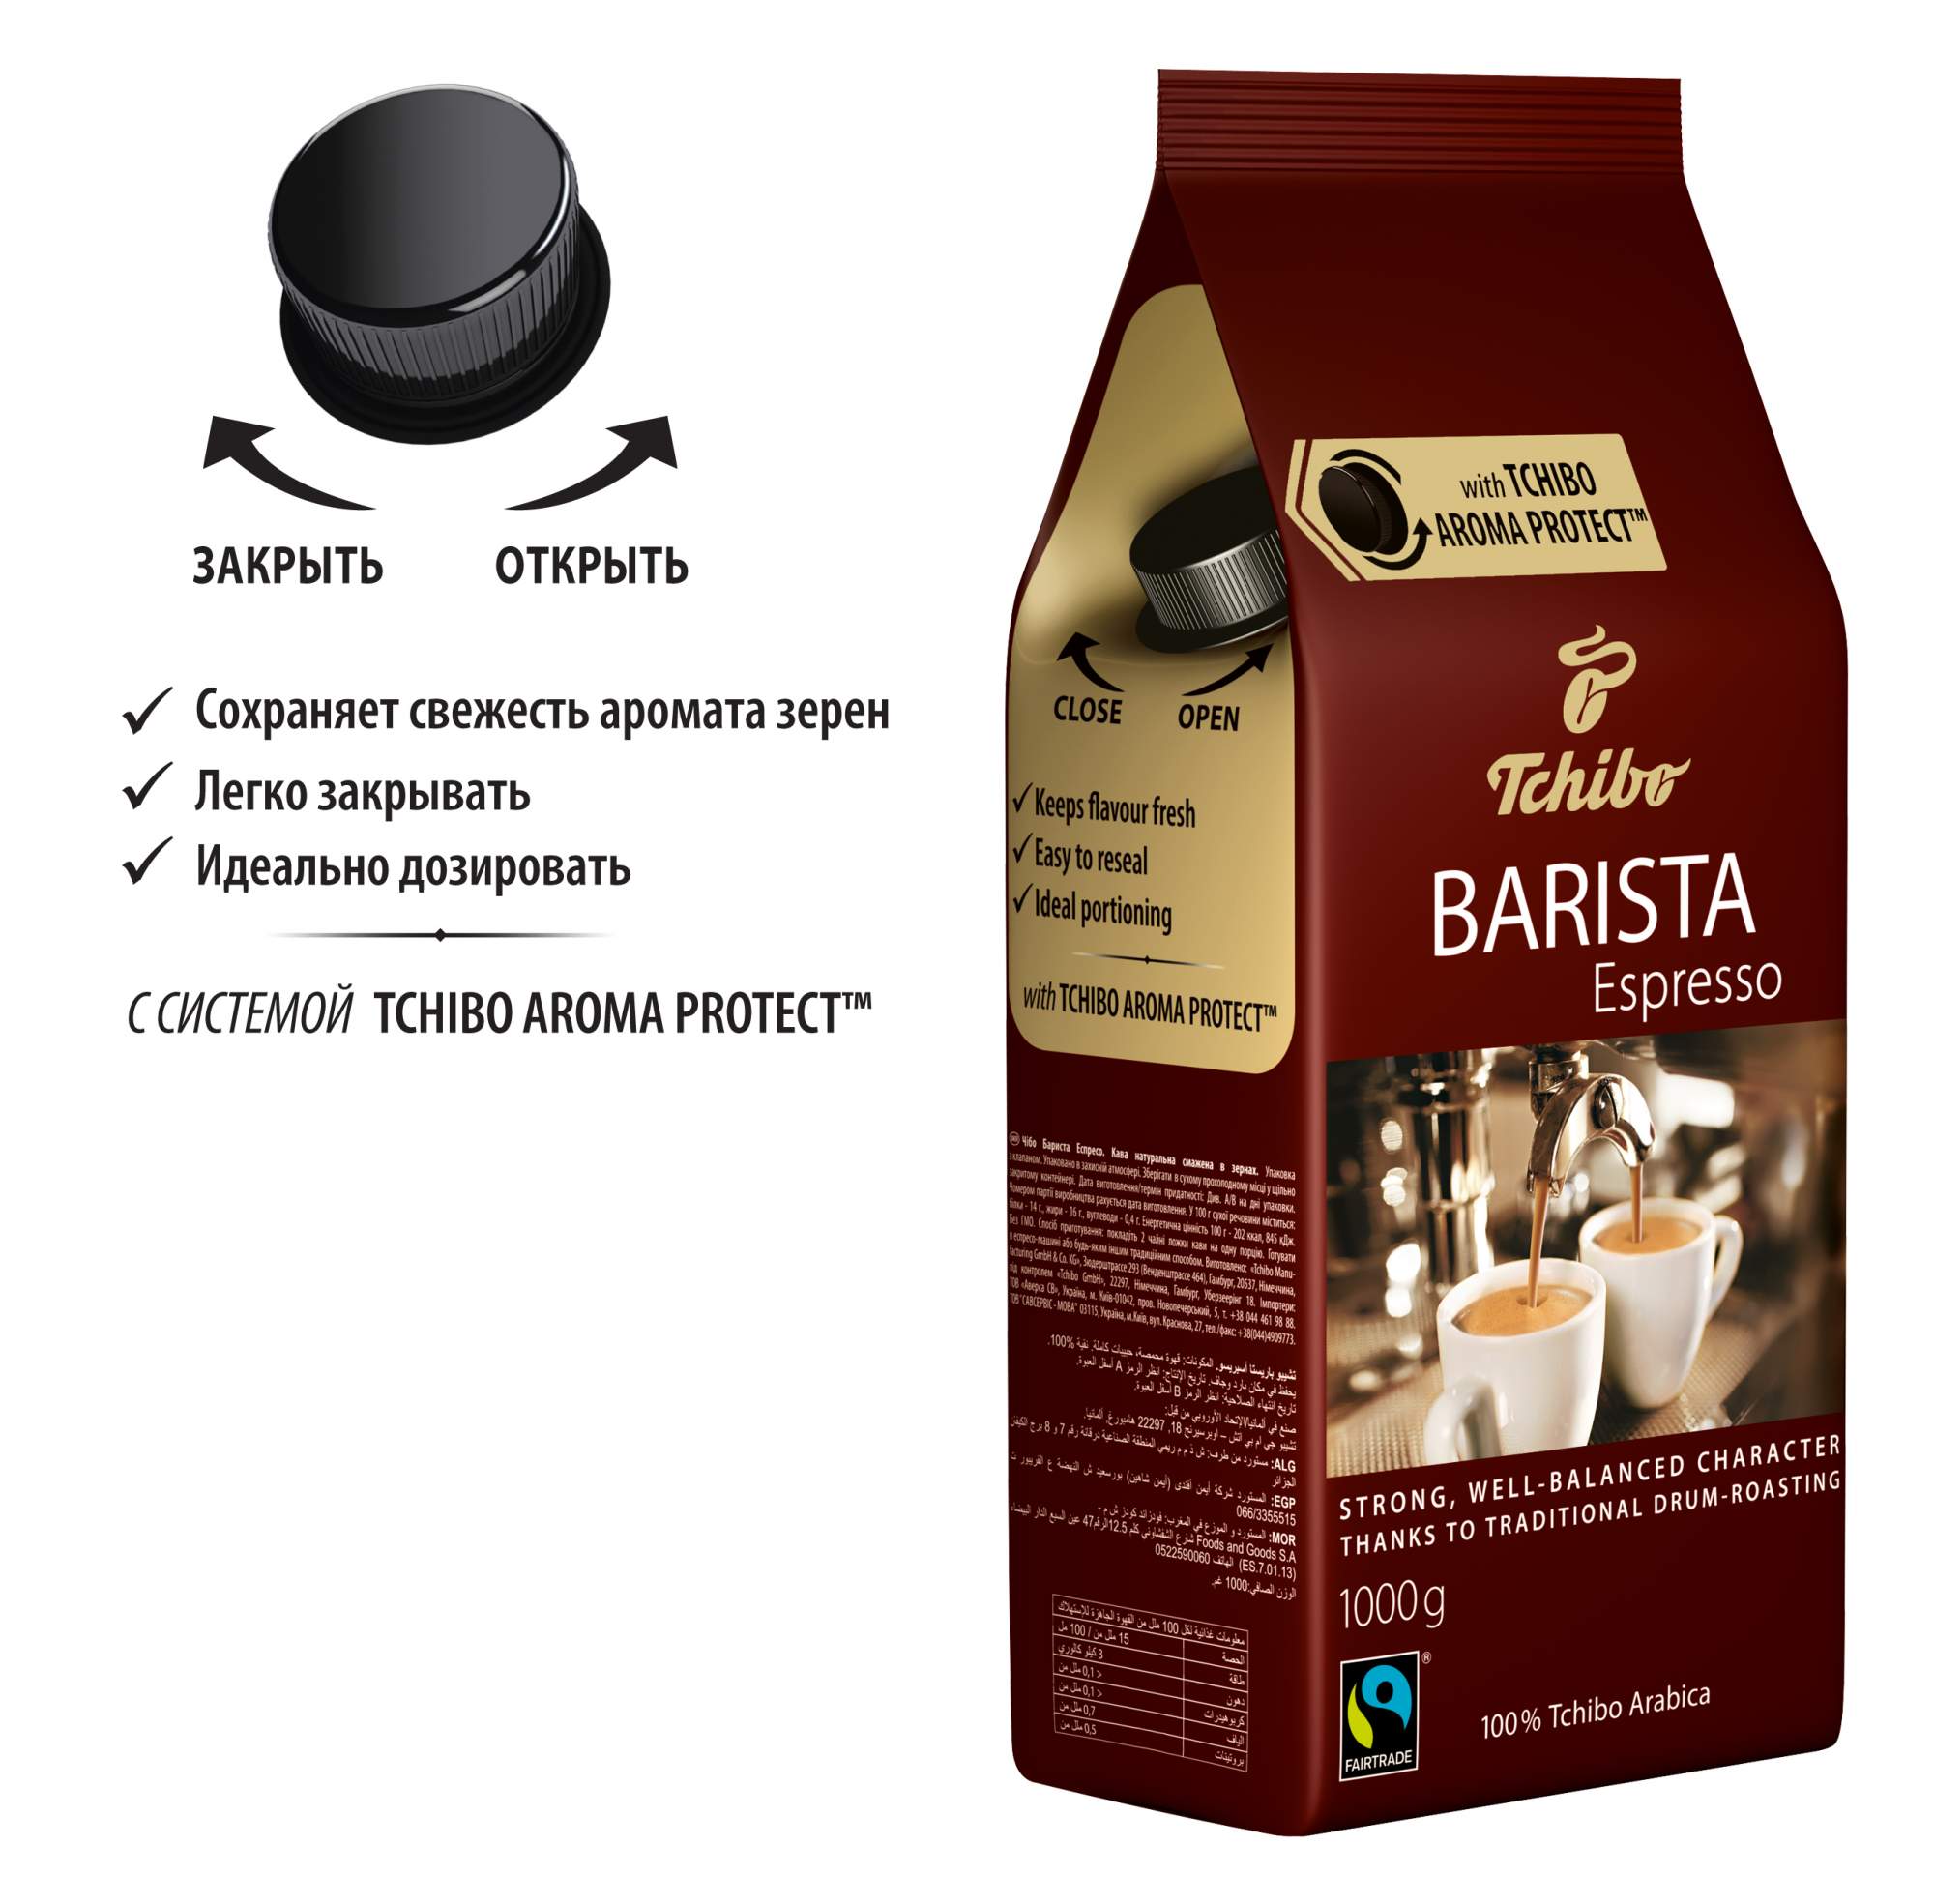 Кофе barista купить. Кофе в зернах Tchibo Barista Espresso. Чибо бариста эспрессо. Espresso Barista кофе в зернах 1000г. Чибо в зернах 1 кг.